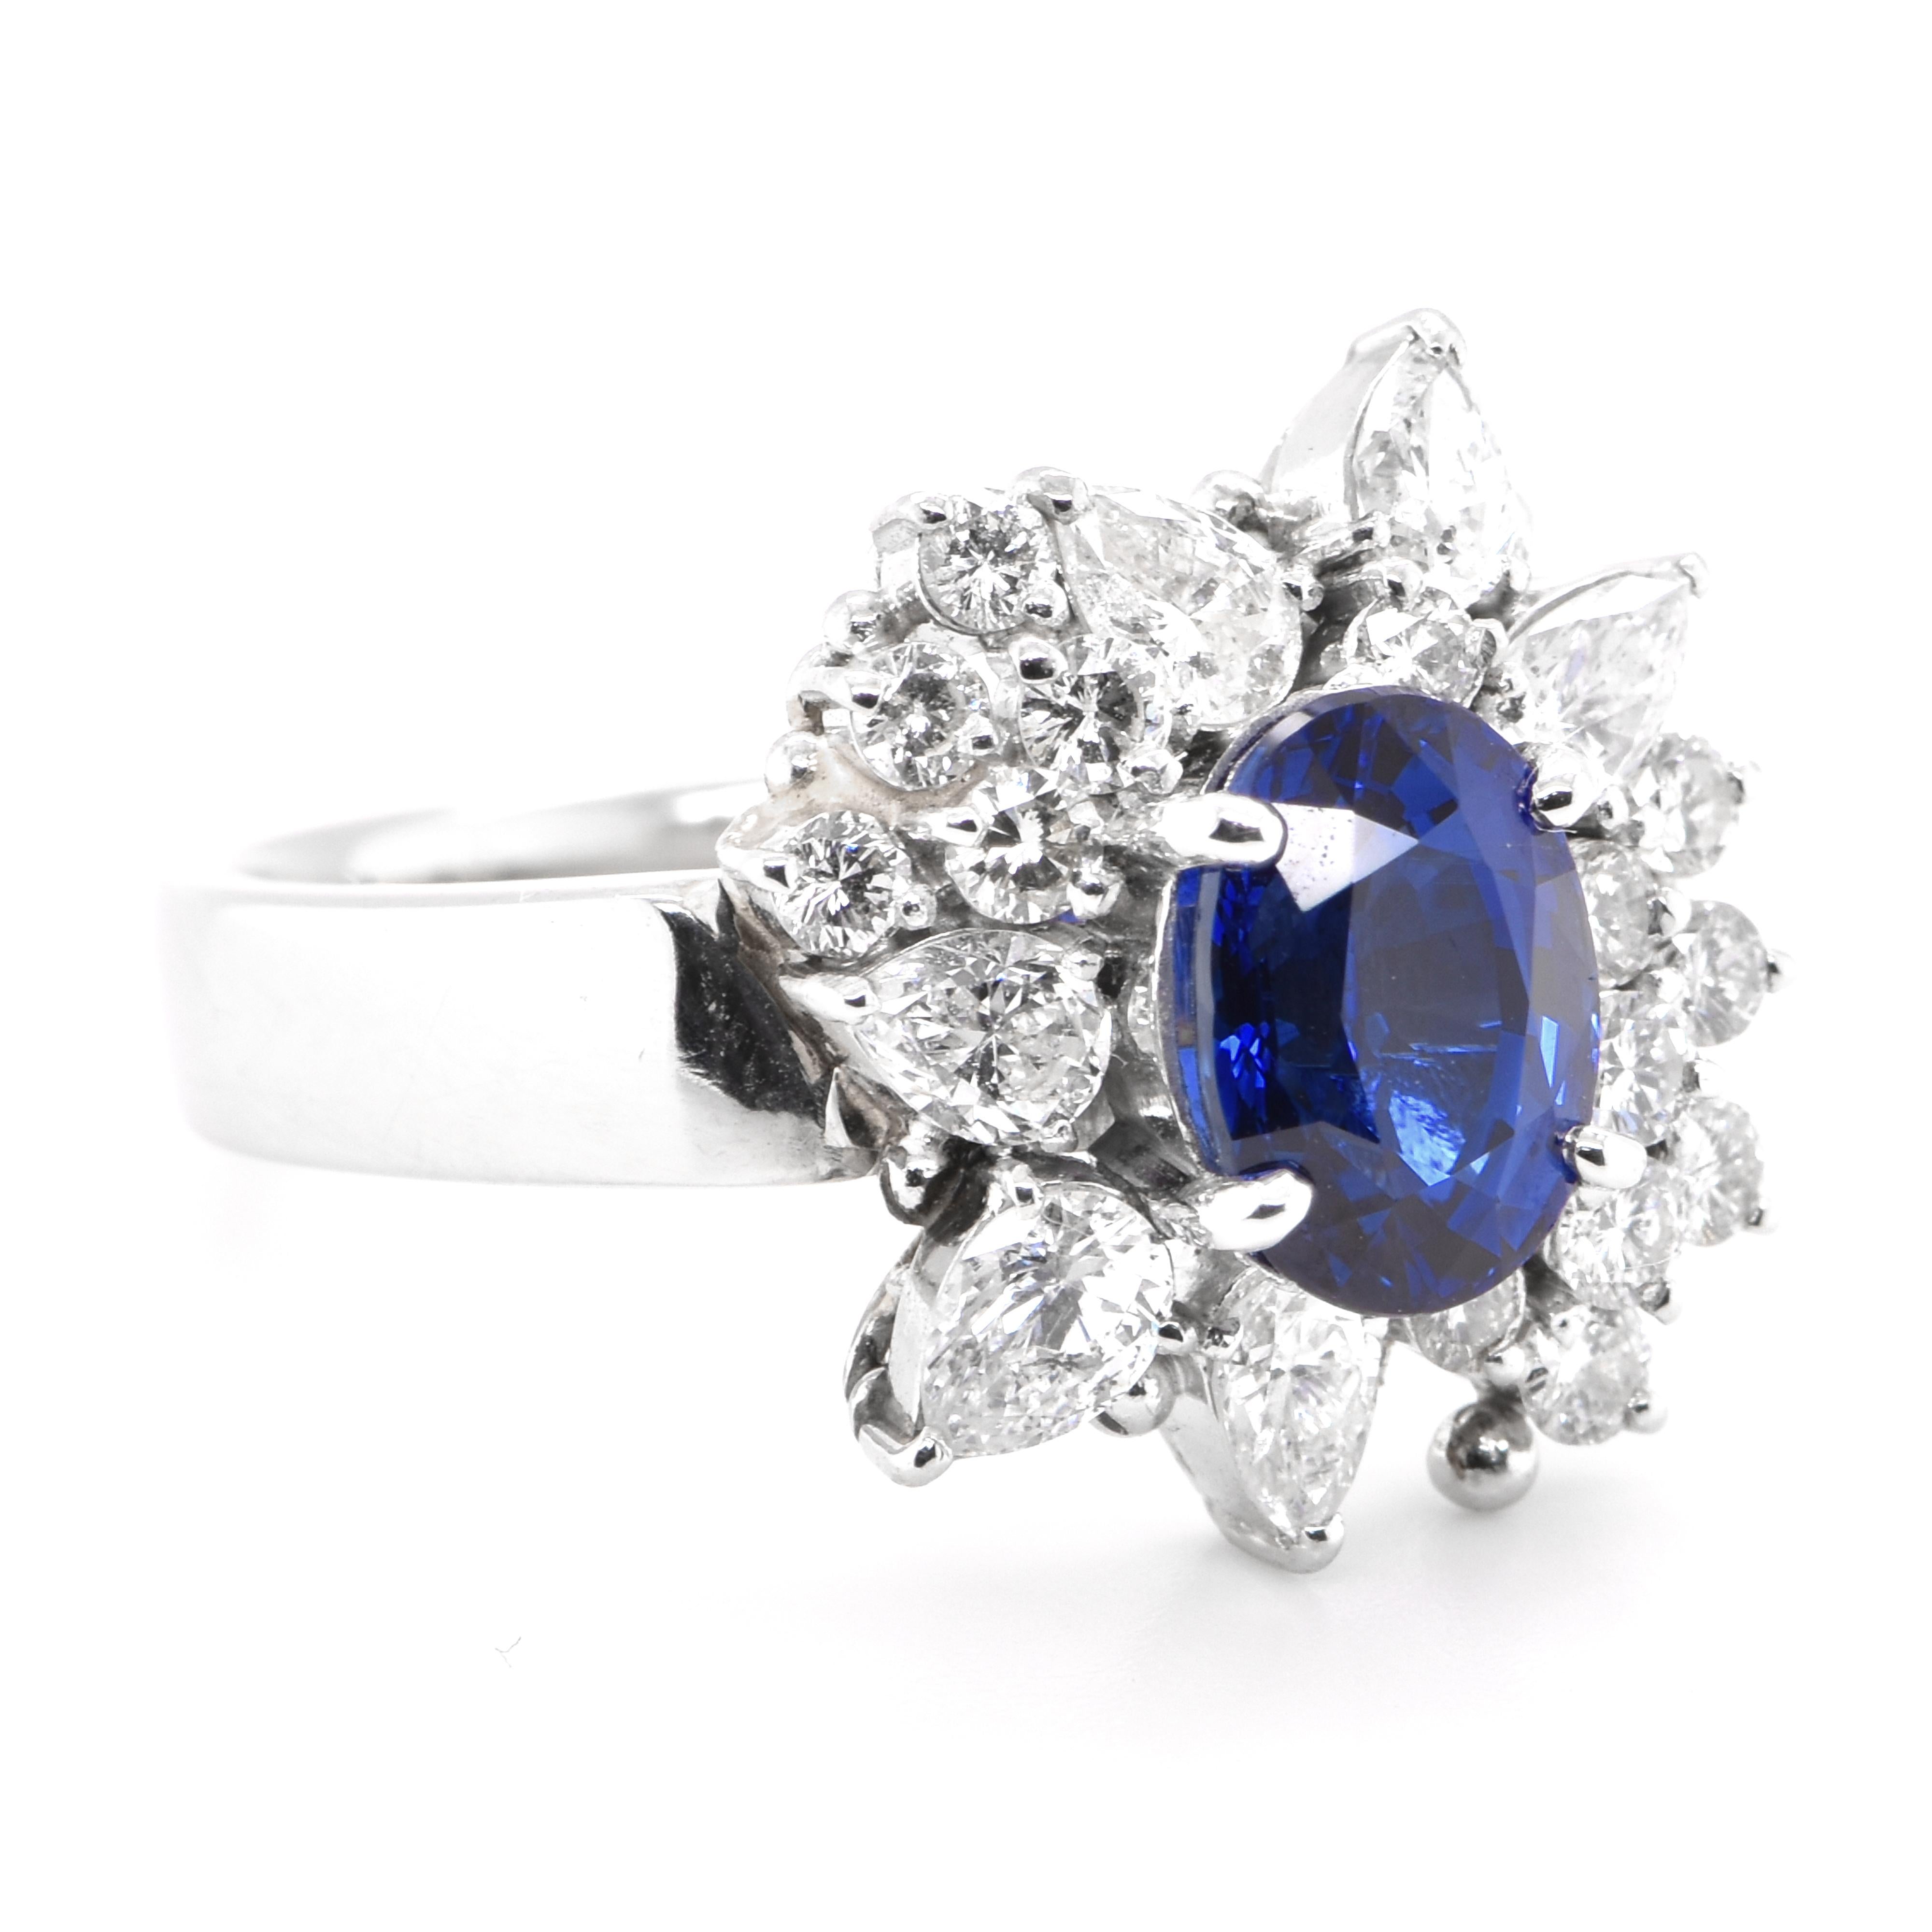 Modern GIA Certified 2.30 Carat Natural Madagascar Sapphire Ring Set in Platinum